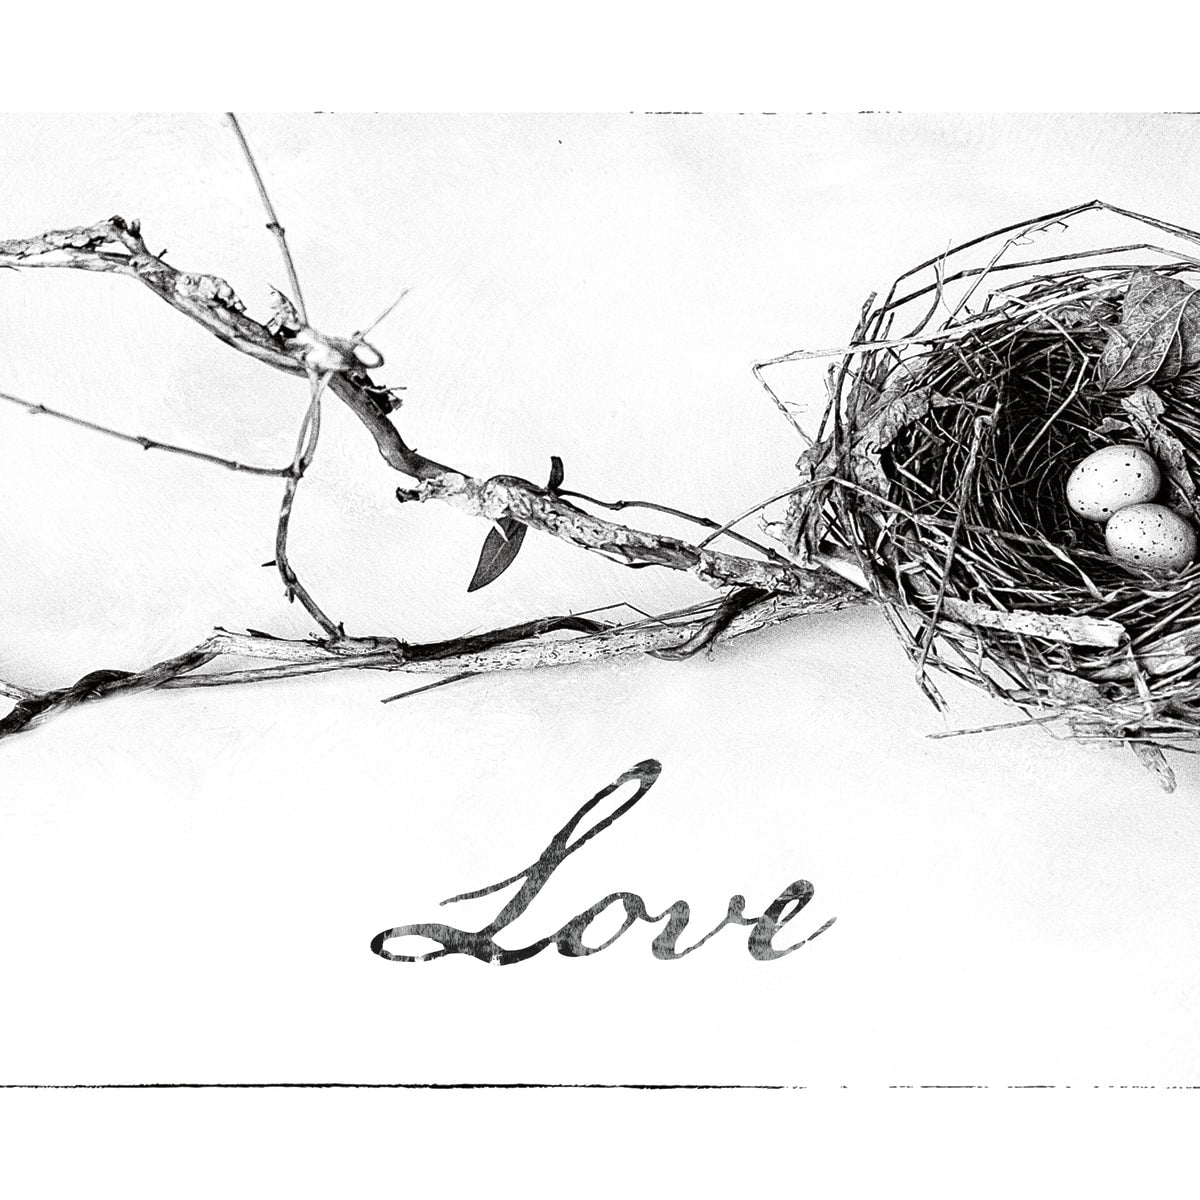 6,524 Bird Nest Sketch Images, Stock Photos & Vectors | Shutterstock